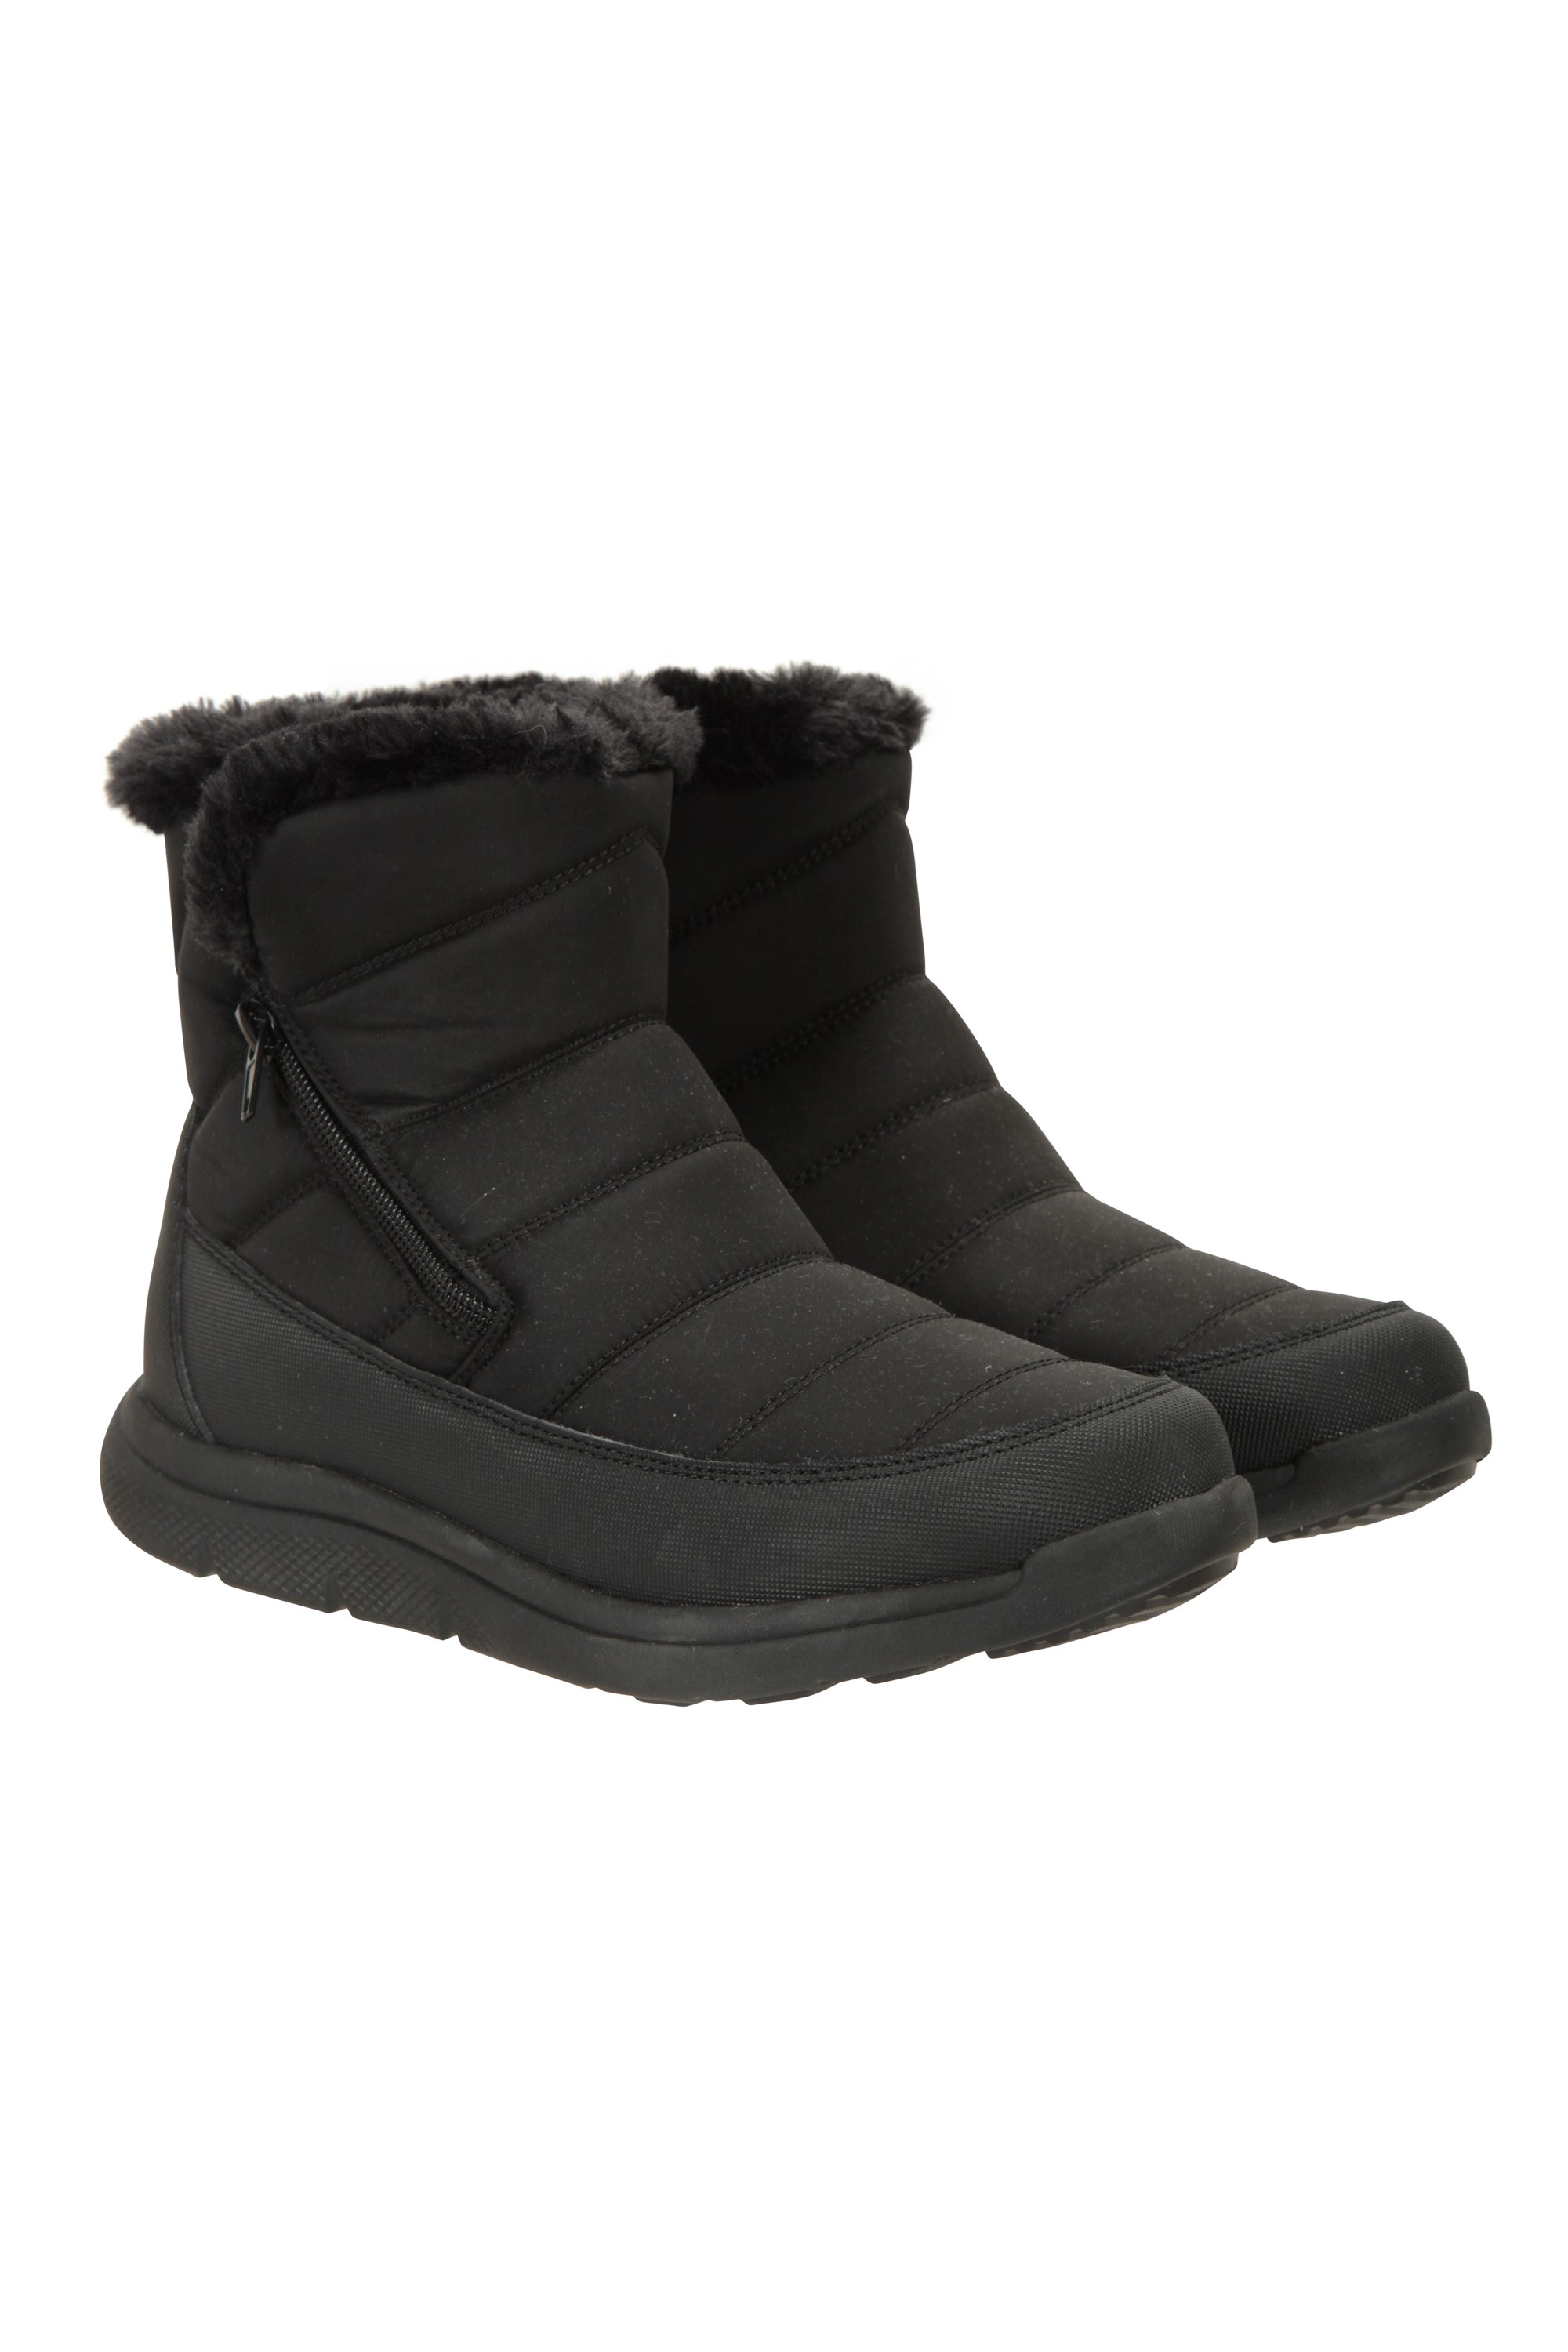 Boston Fleece-lined Womens Boots - Black